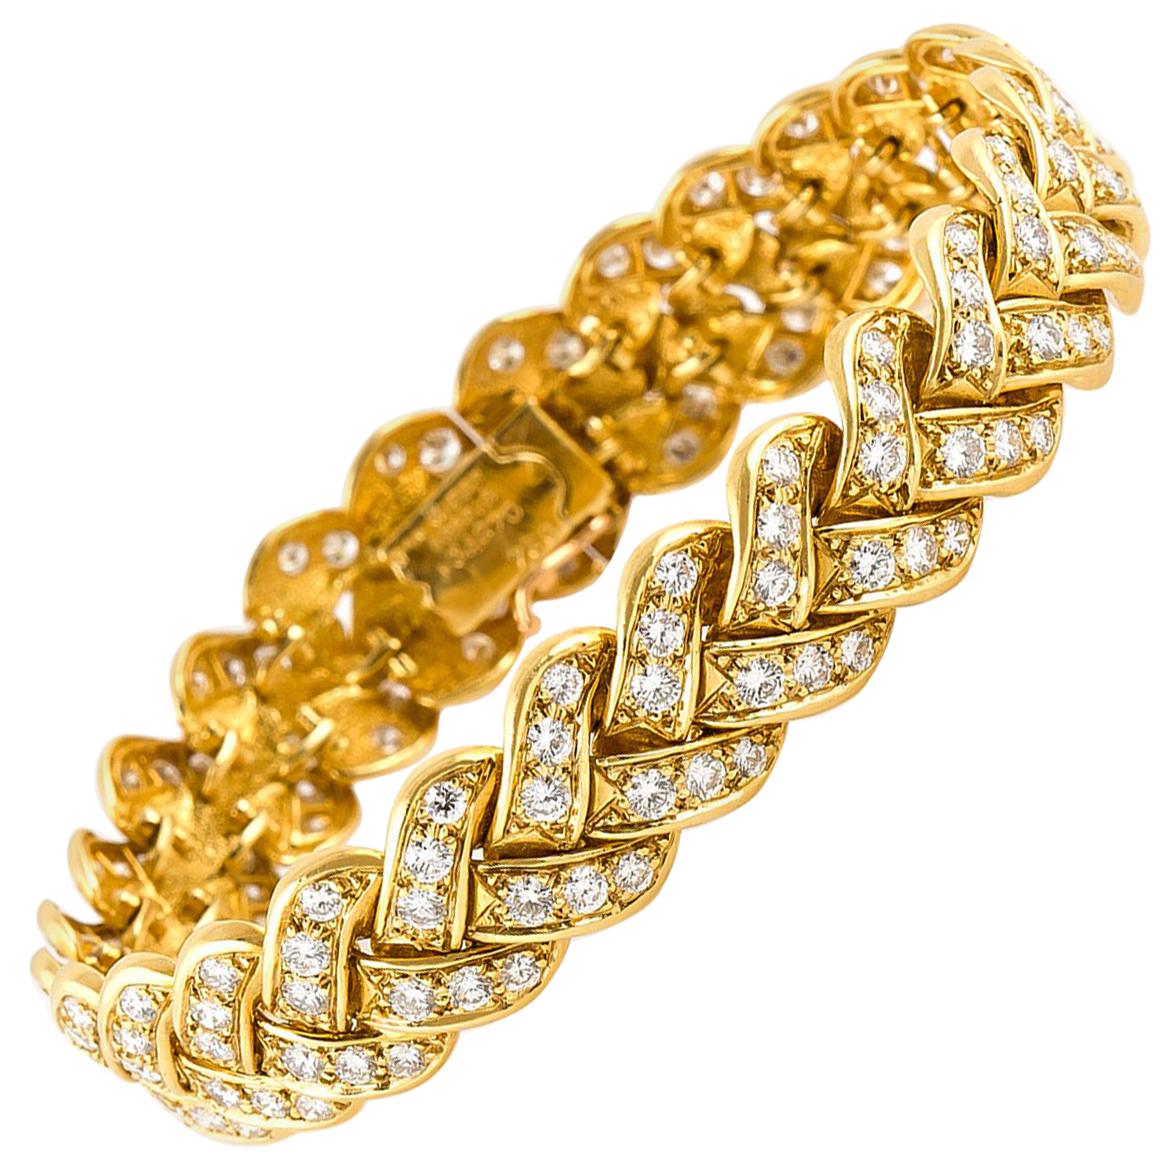 Van Cleef & Arpels Gold and Diamonds Bracelet